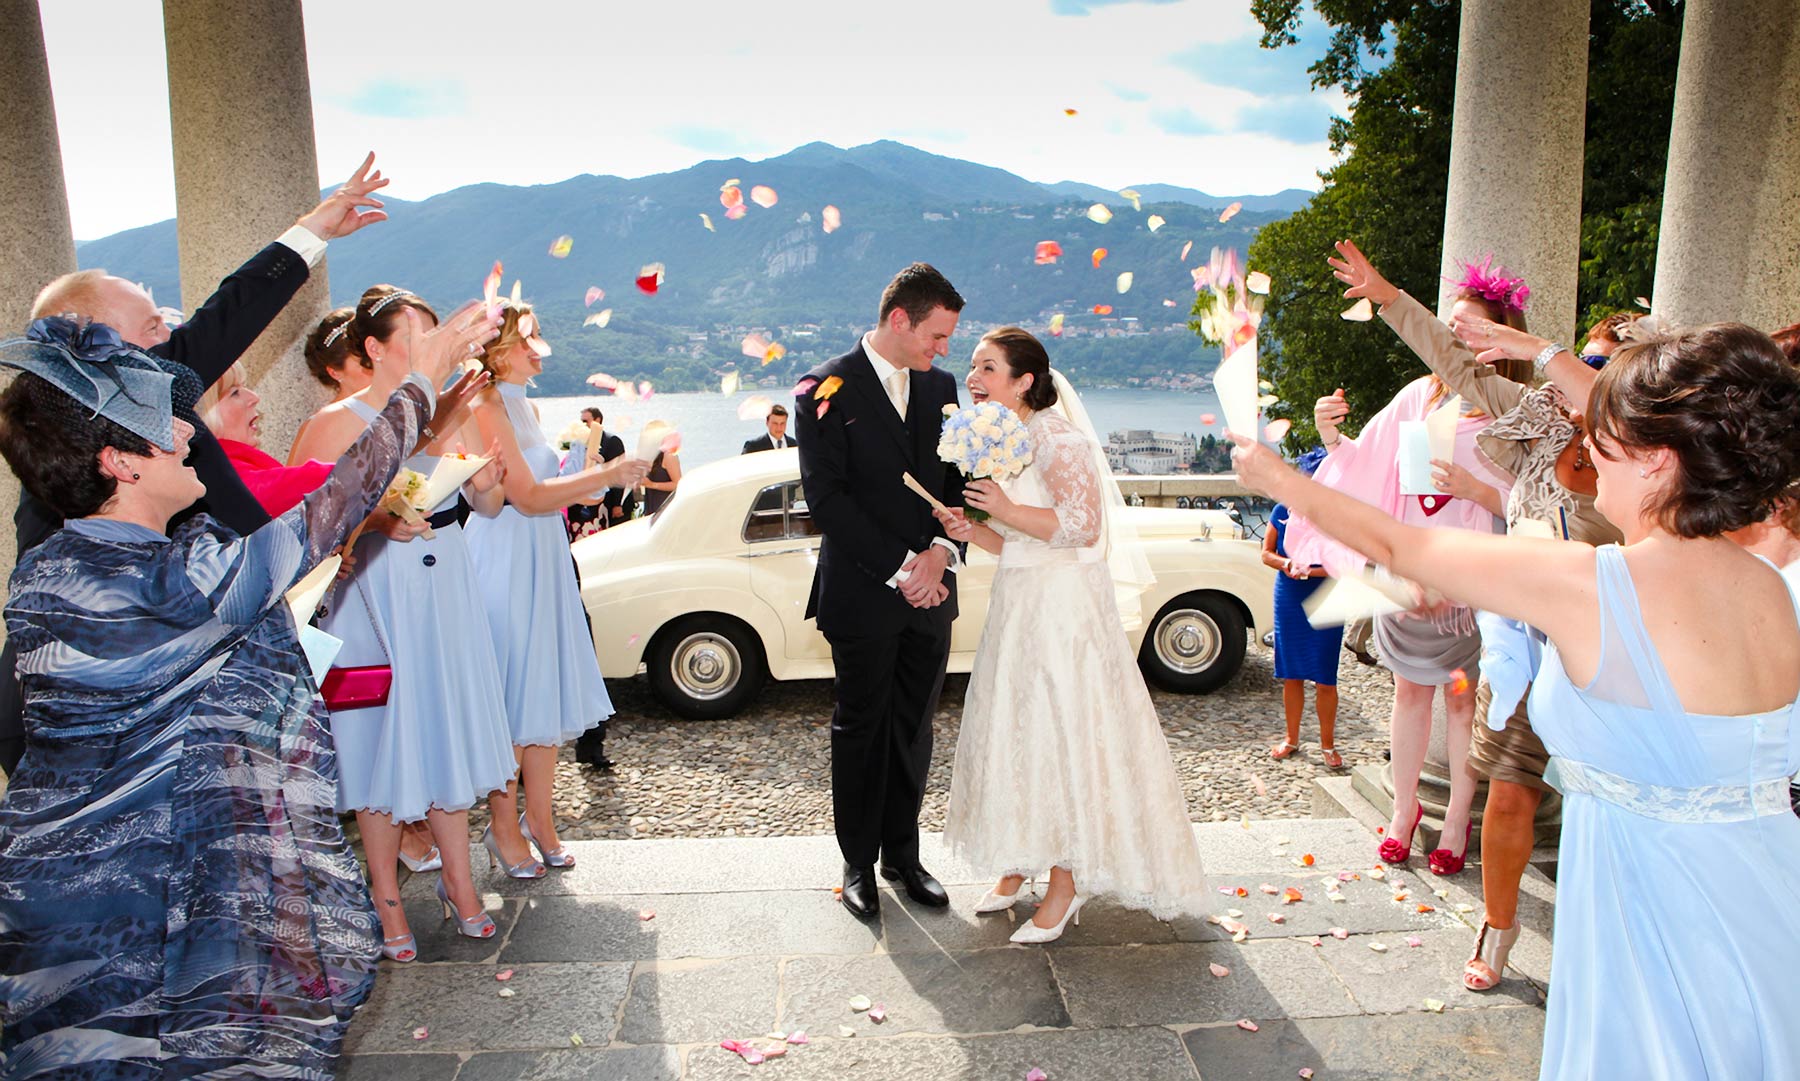 Catholic Wedding Ceremonies in Italy